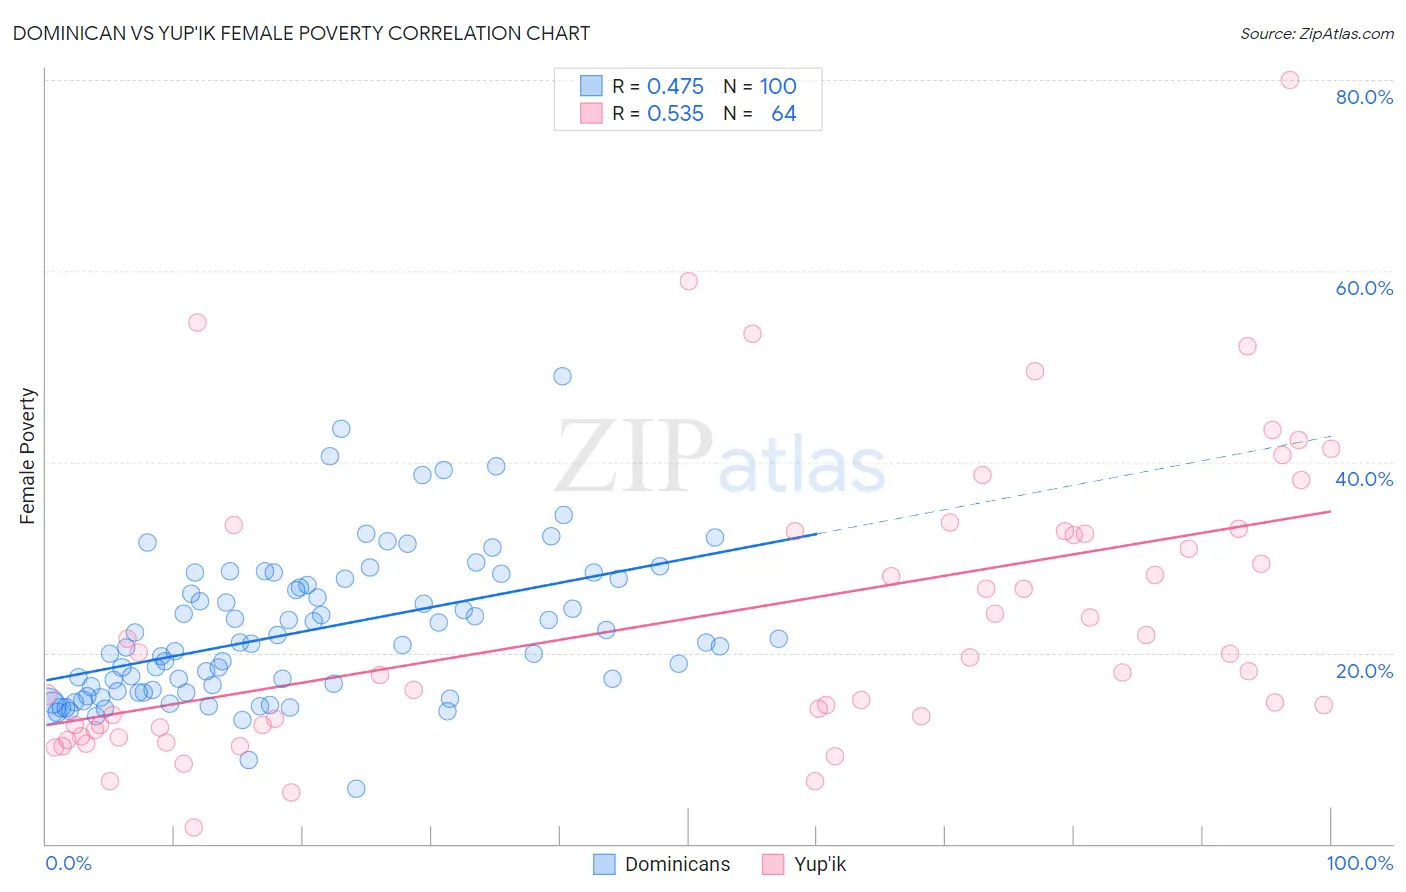 Dominican vs Yup'ik Female Poverty